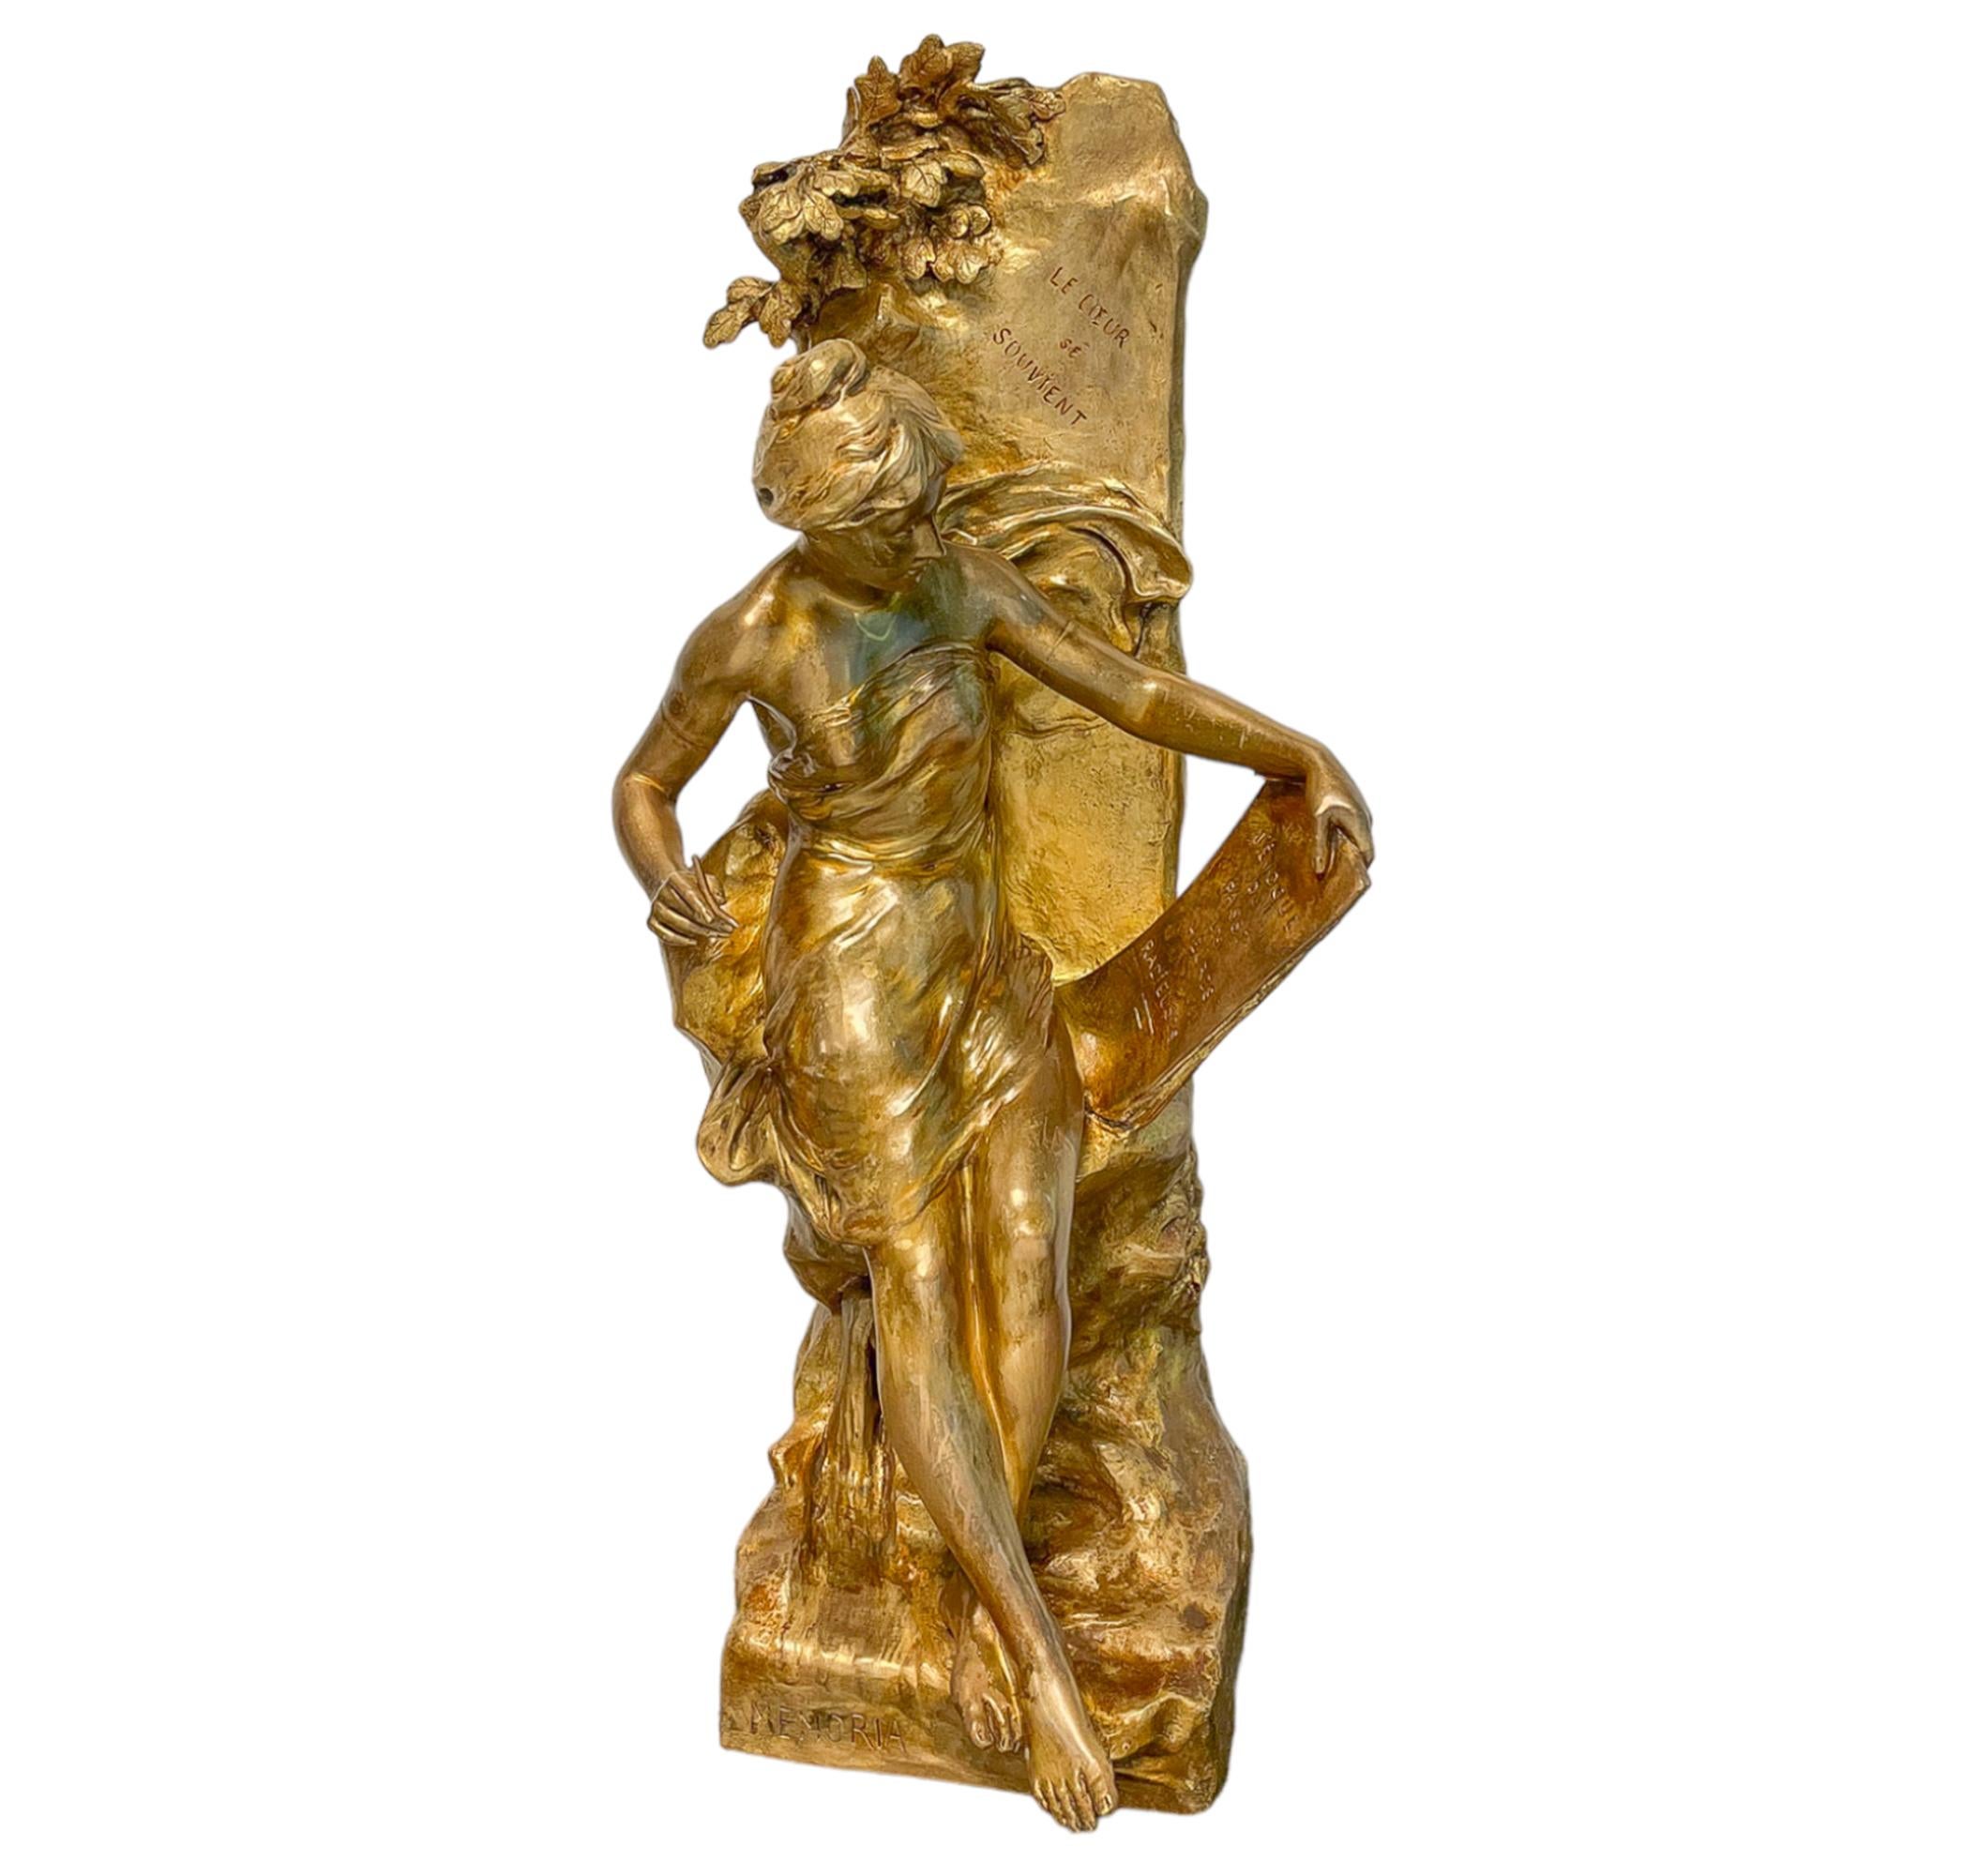 Statue figurative féminine « Memoria » en bronze patiné - Sculpture de Émile Louis Picault